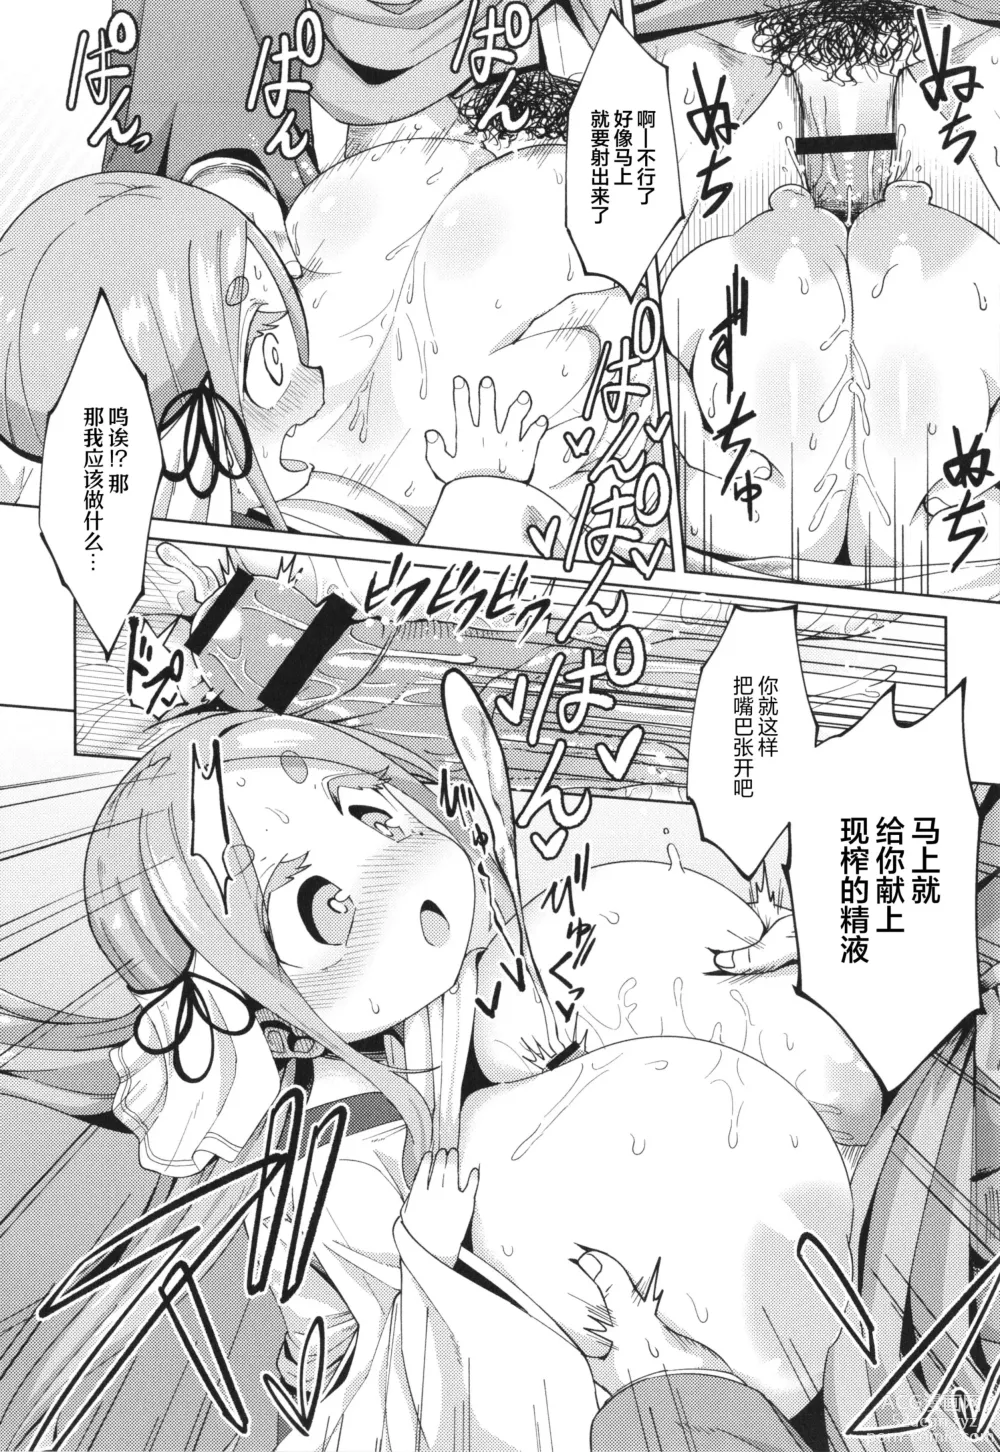 Page 14 of manga En